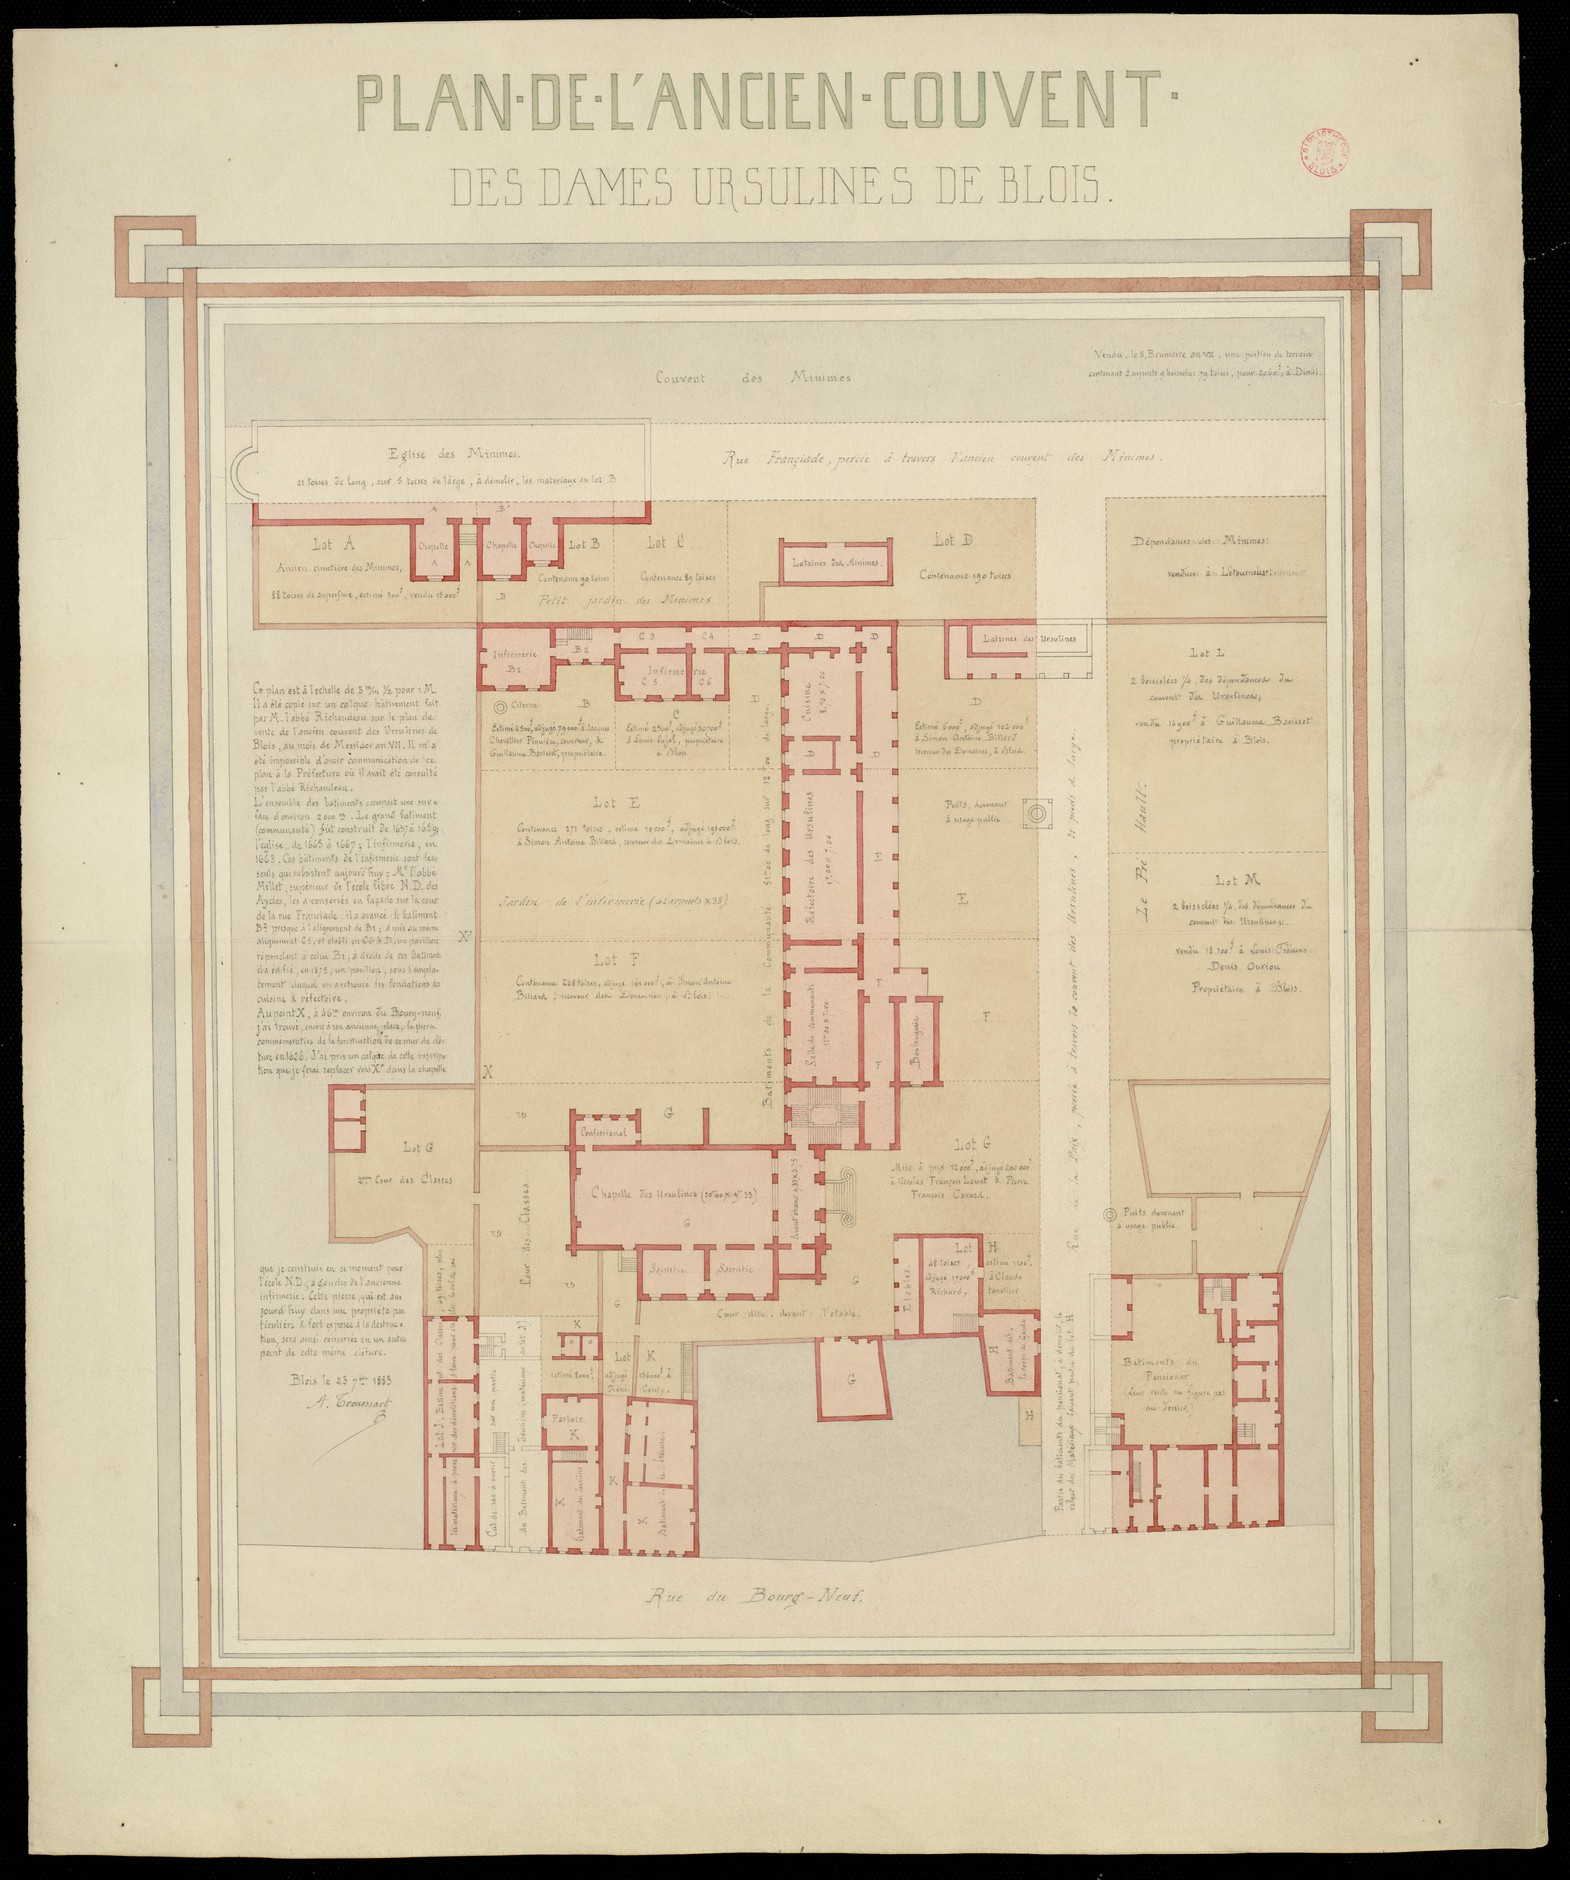 Arthur Trouessart, Plan de l 'ancien couvent des dames ursulines de Blois, 1883